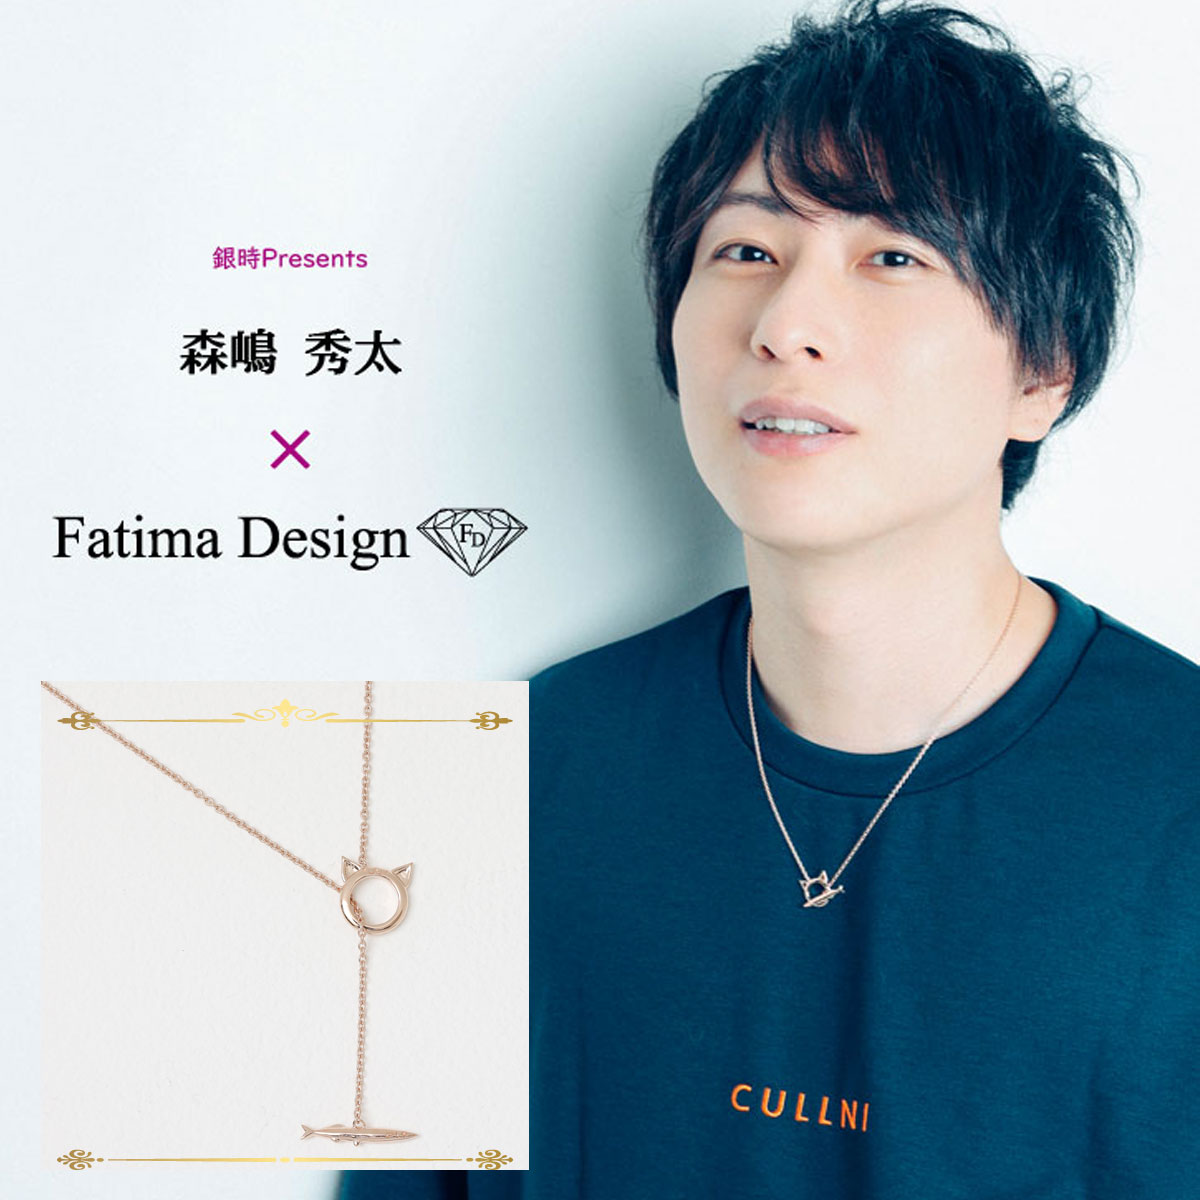 銀時Presents≪森嶋秀太 × Fatima Design コラボアクセサリー Vol.2 